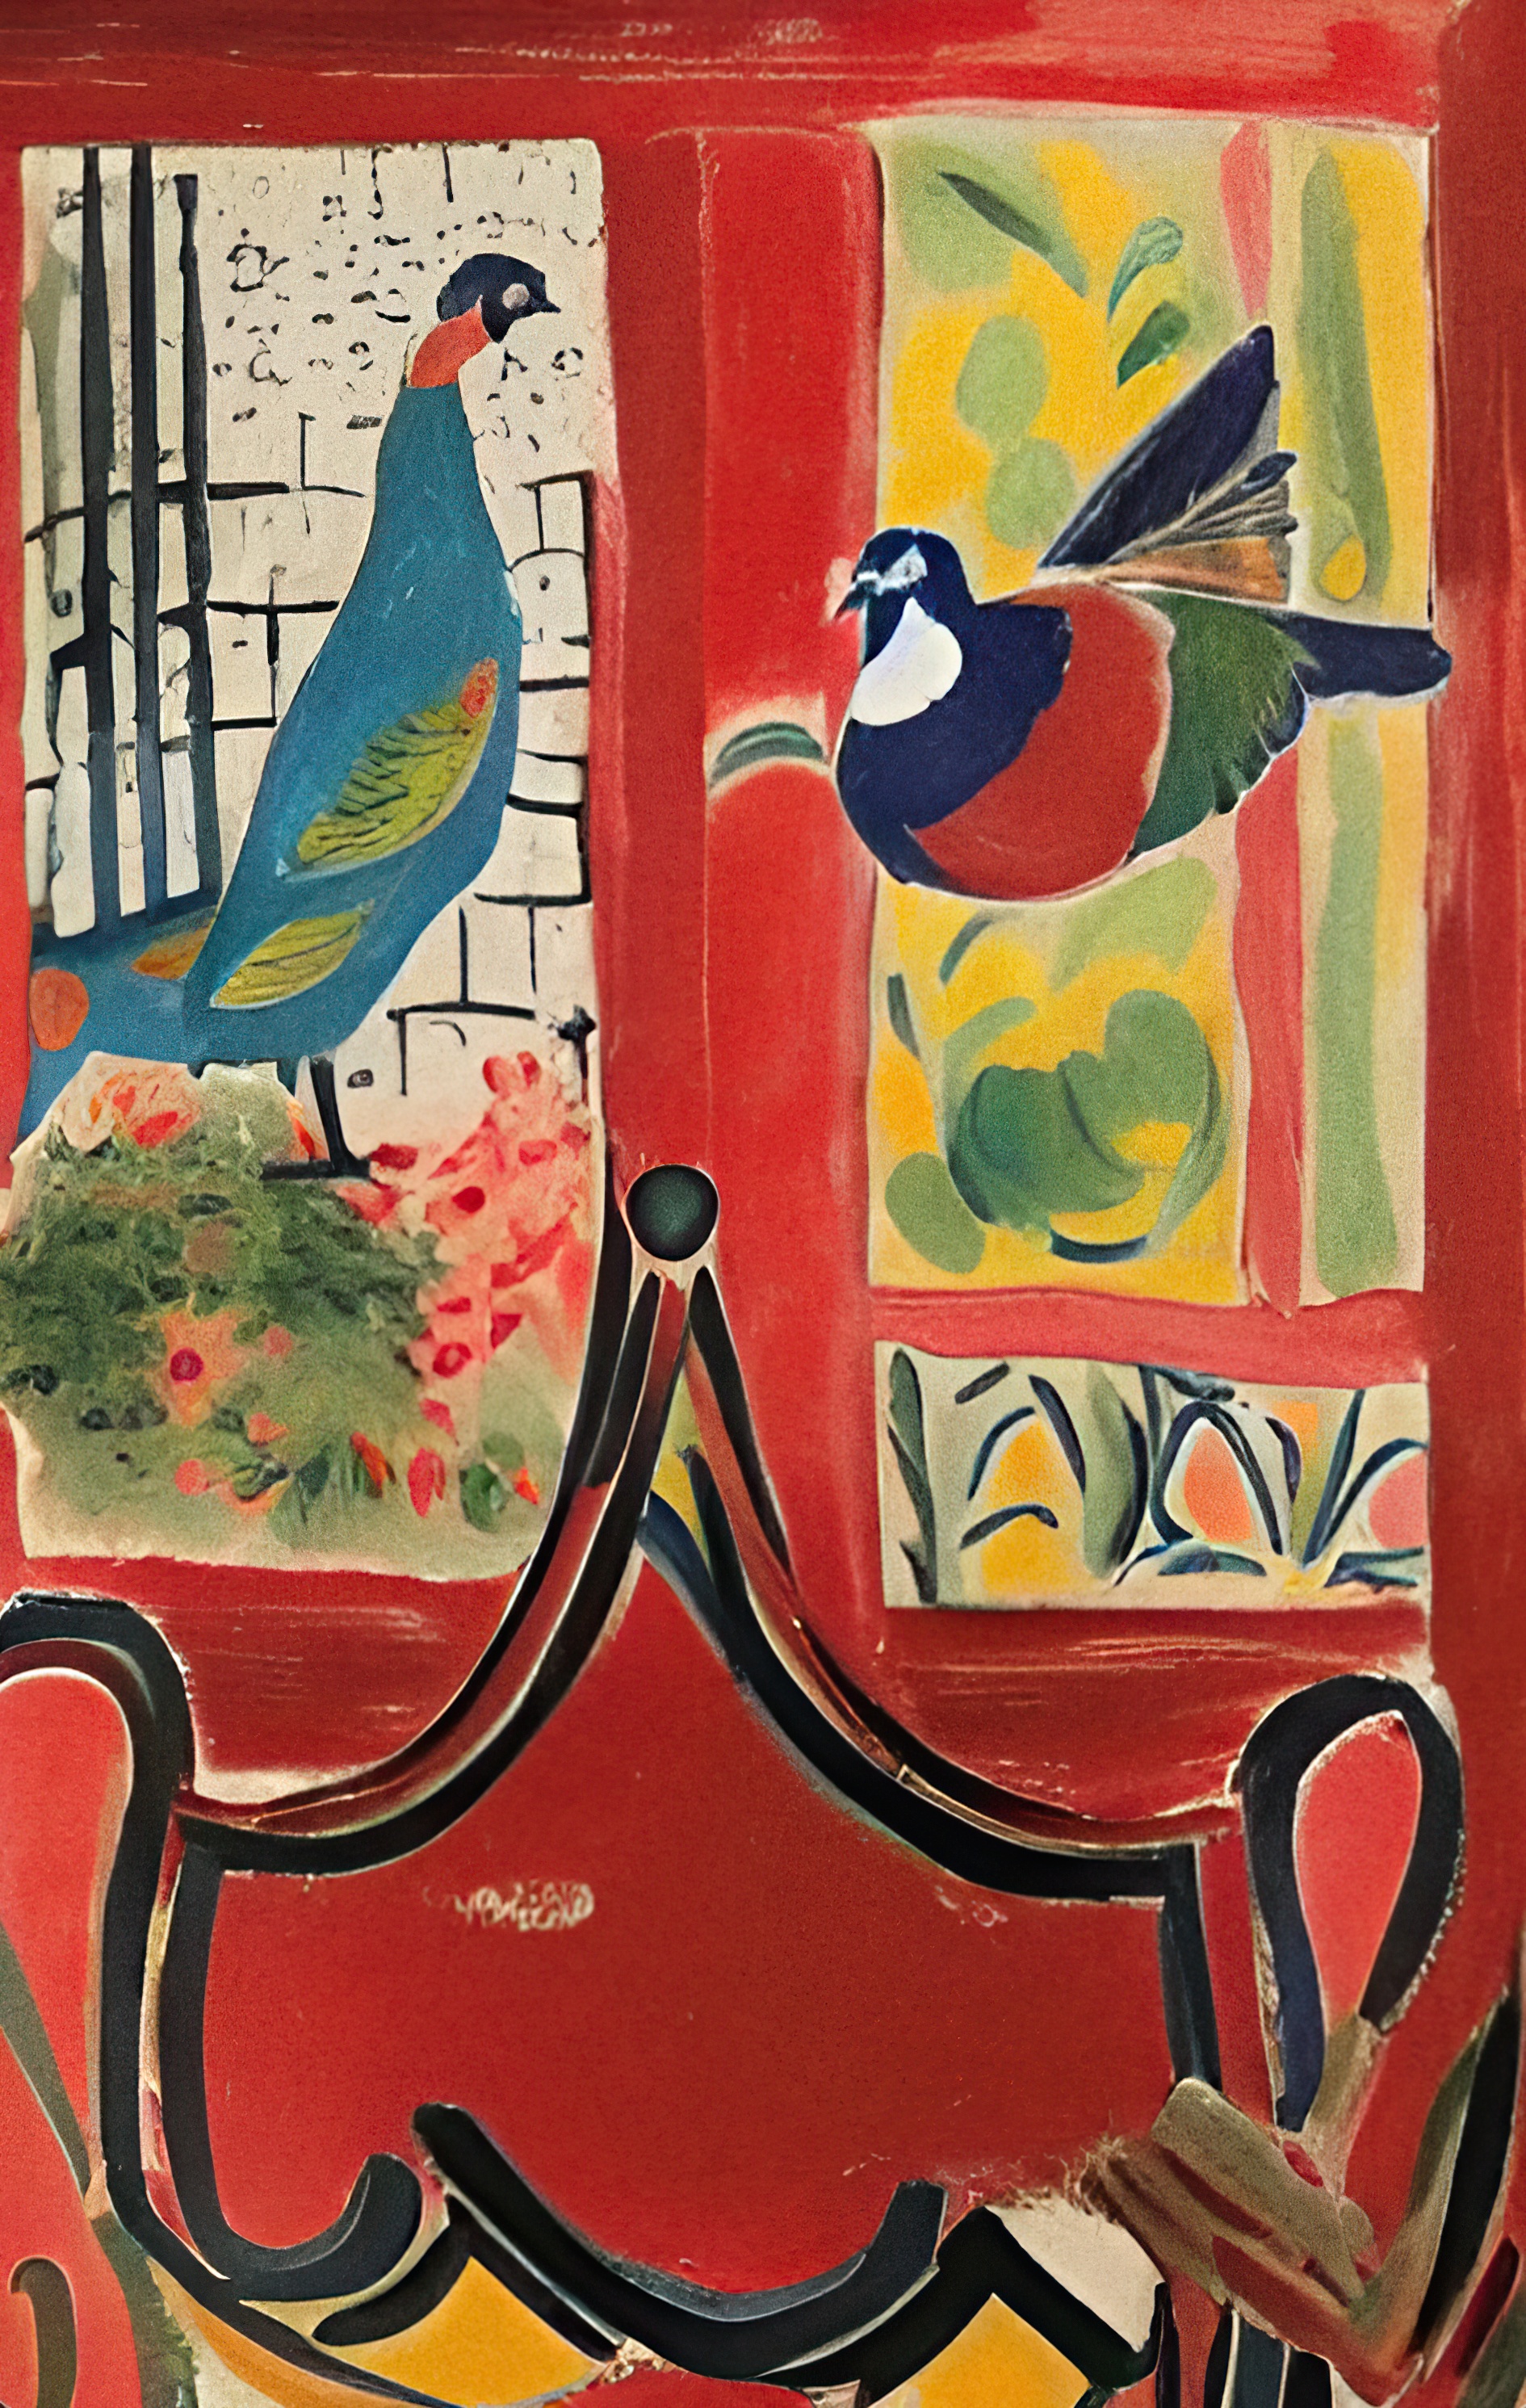 'The Birds' |Paolo Galleri|